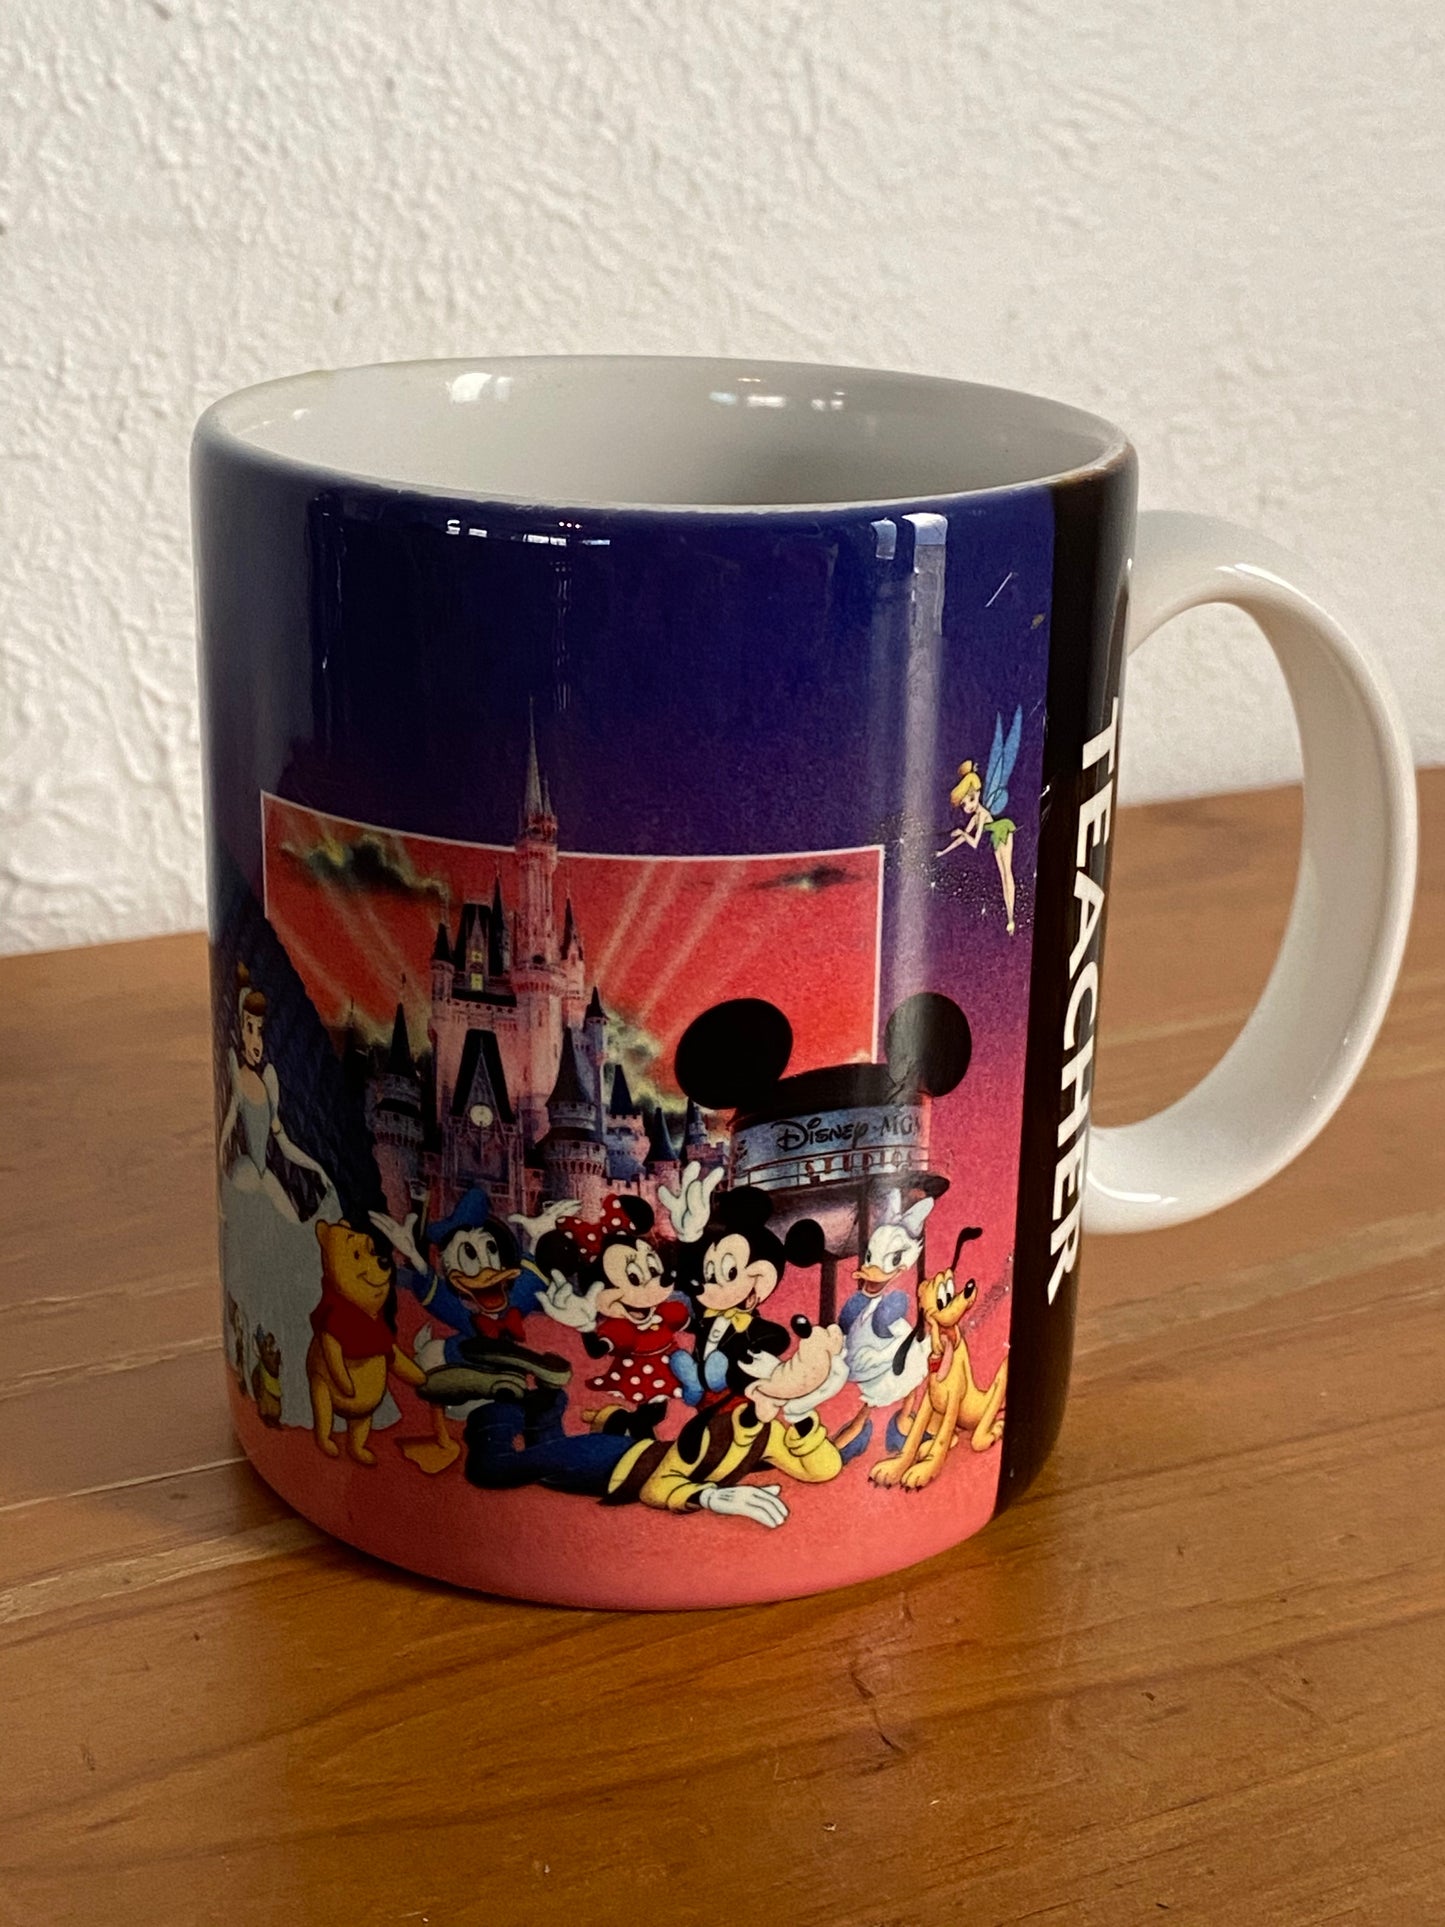 Walt Disney World "Teacher" Mug